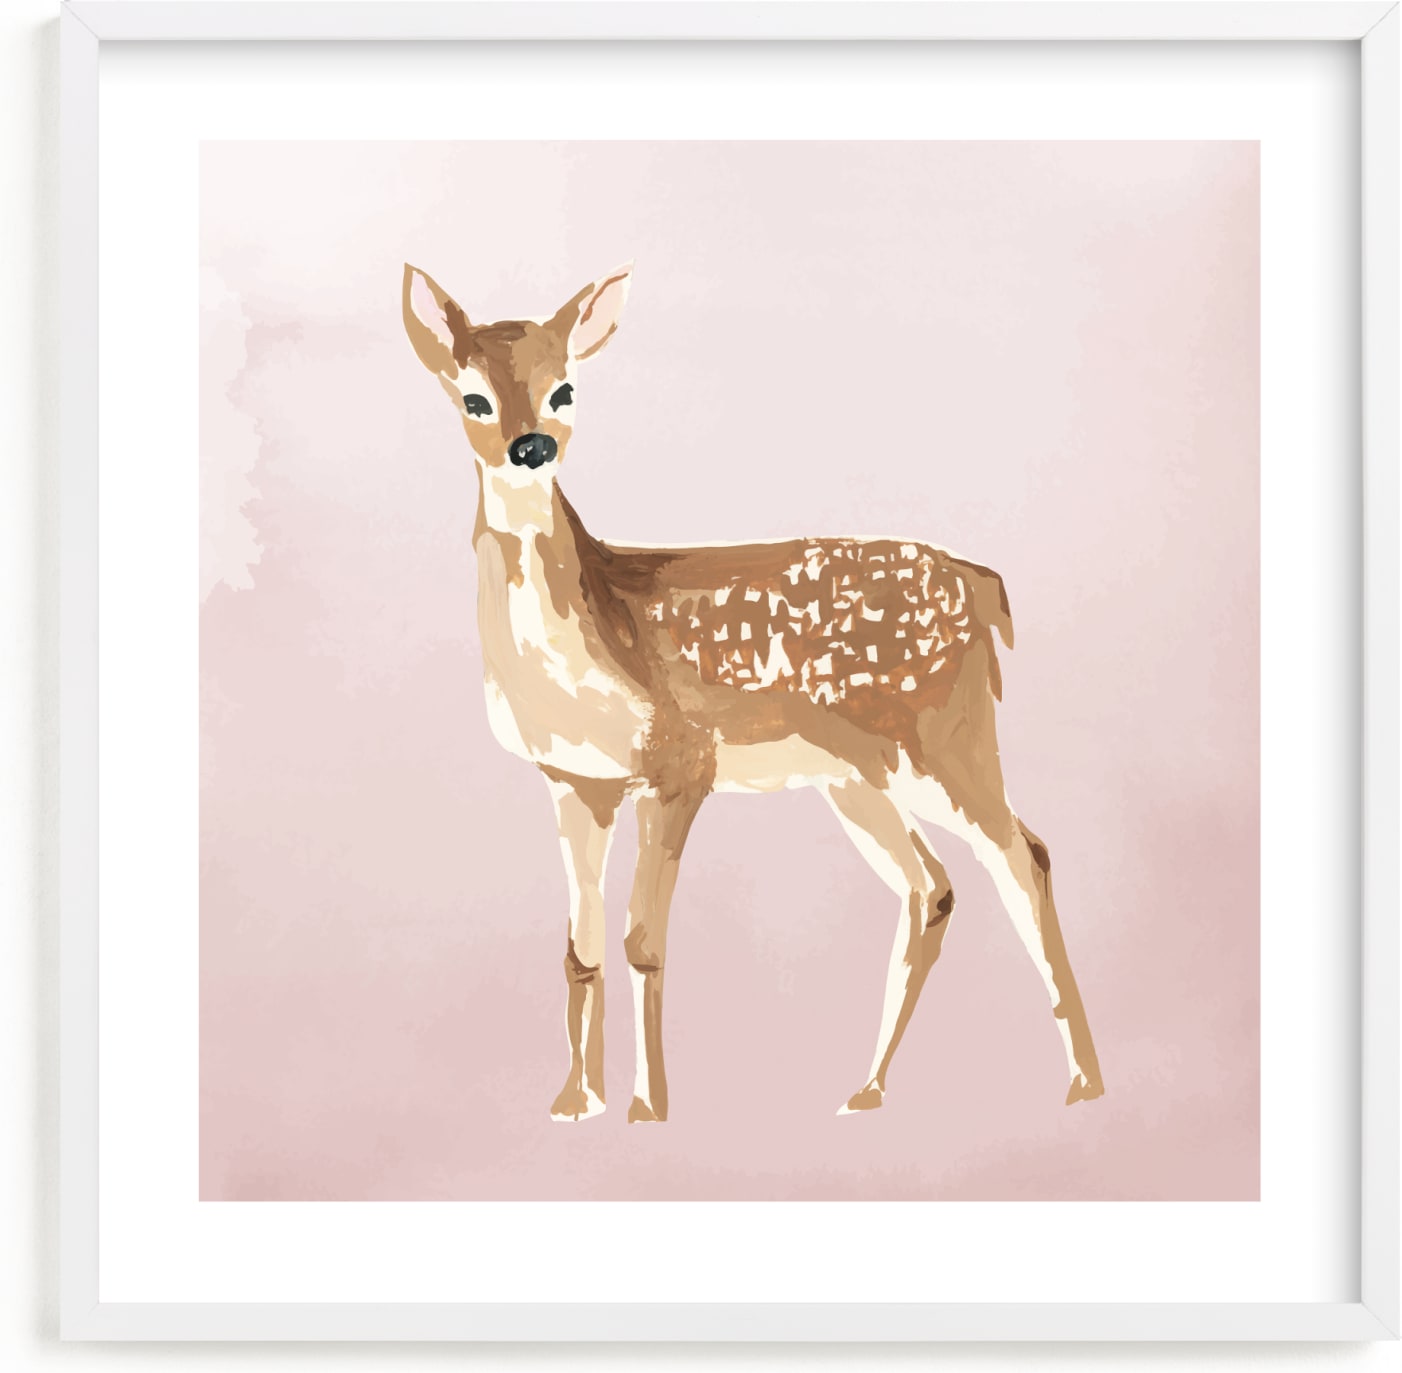 This is a pink nursery wall art by Teju Reval called Enchanted Deer II.